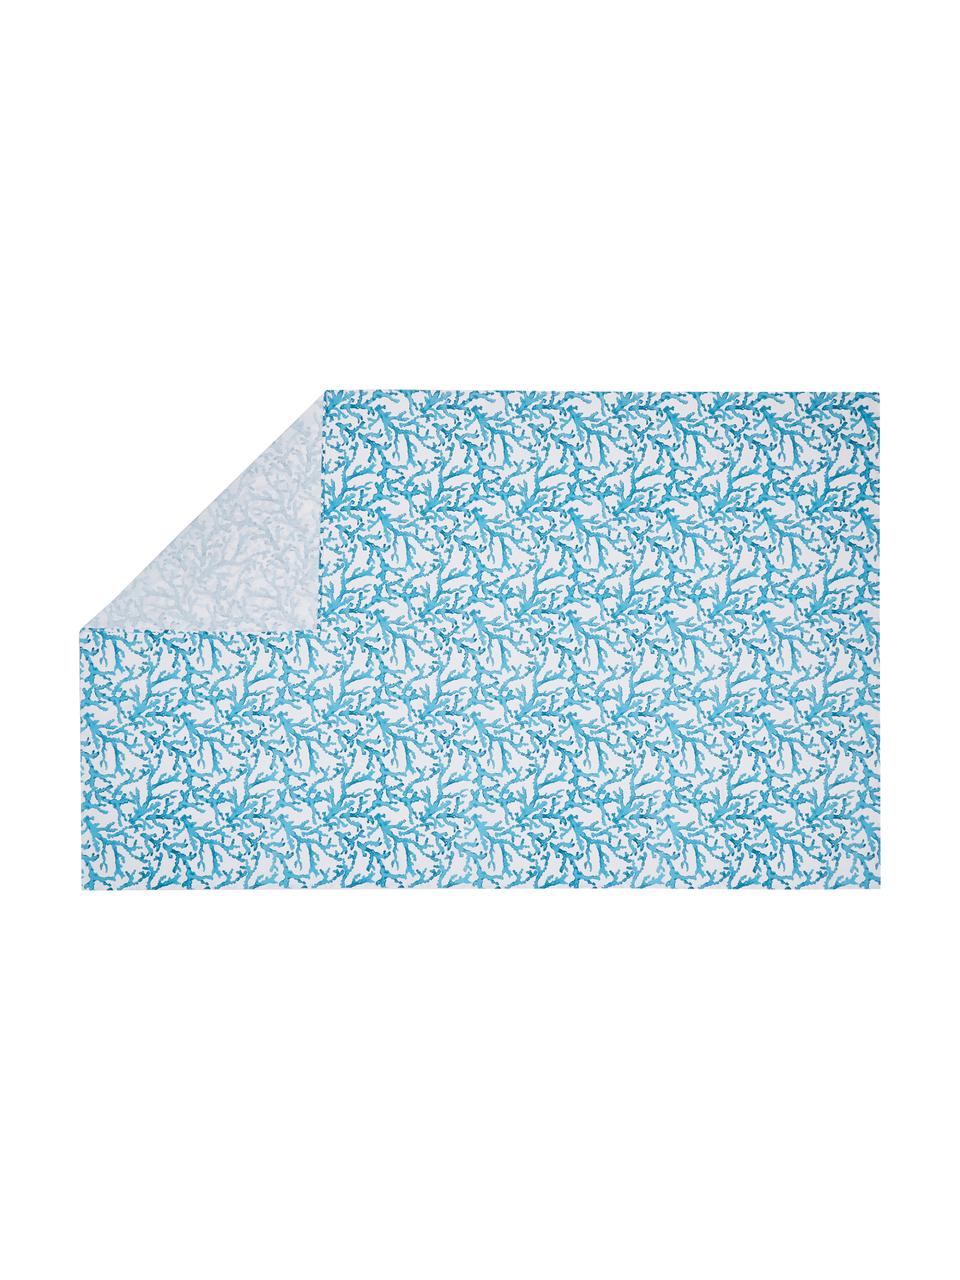 Baumwoll-Tischdecke Estran mit Korallenprint, Baumwolle, Blau, Weiß, Für 4 - 6 Personen (B 160 x L 160 cm)